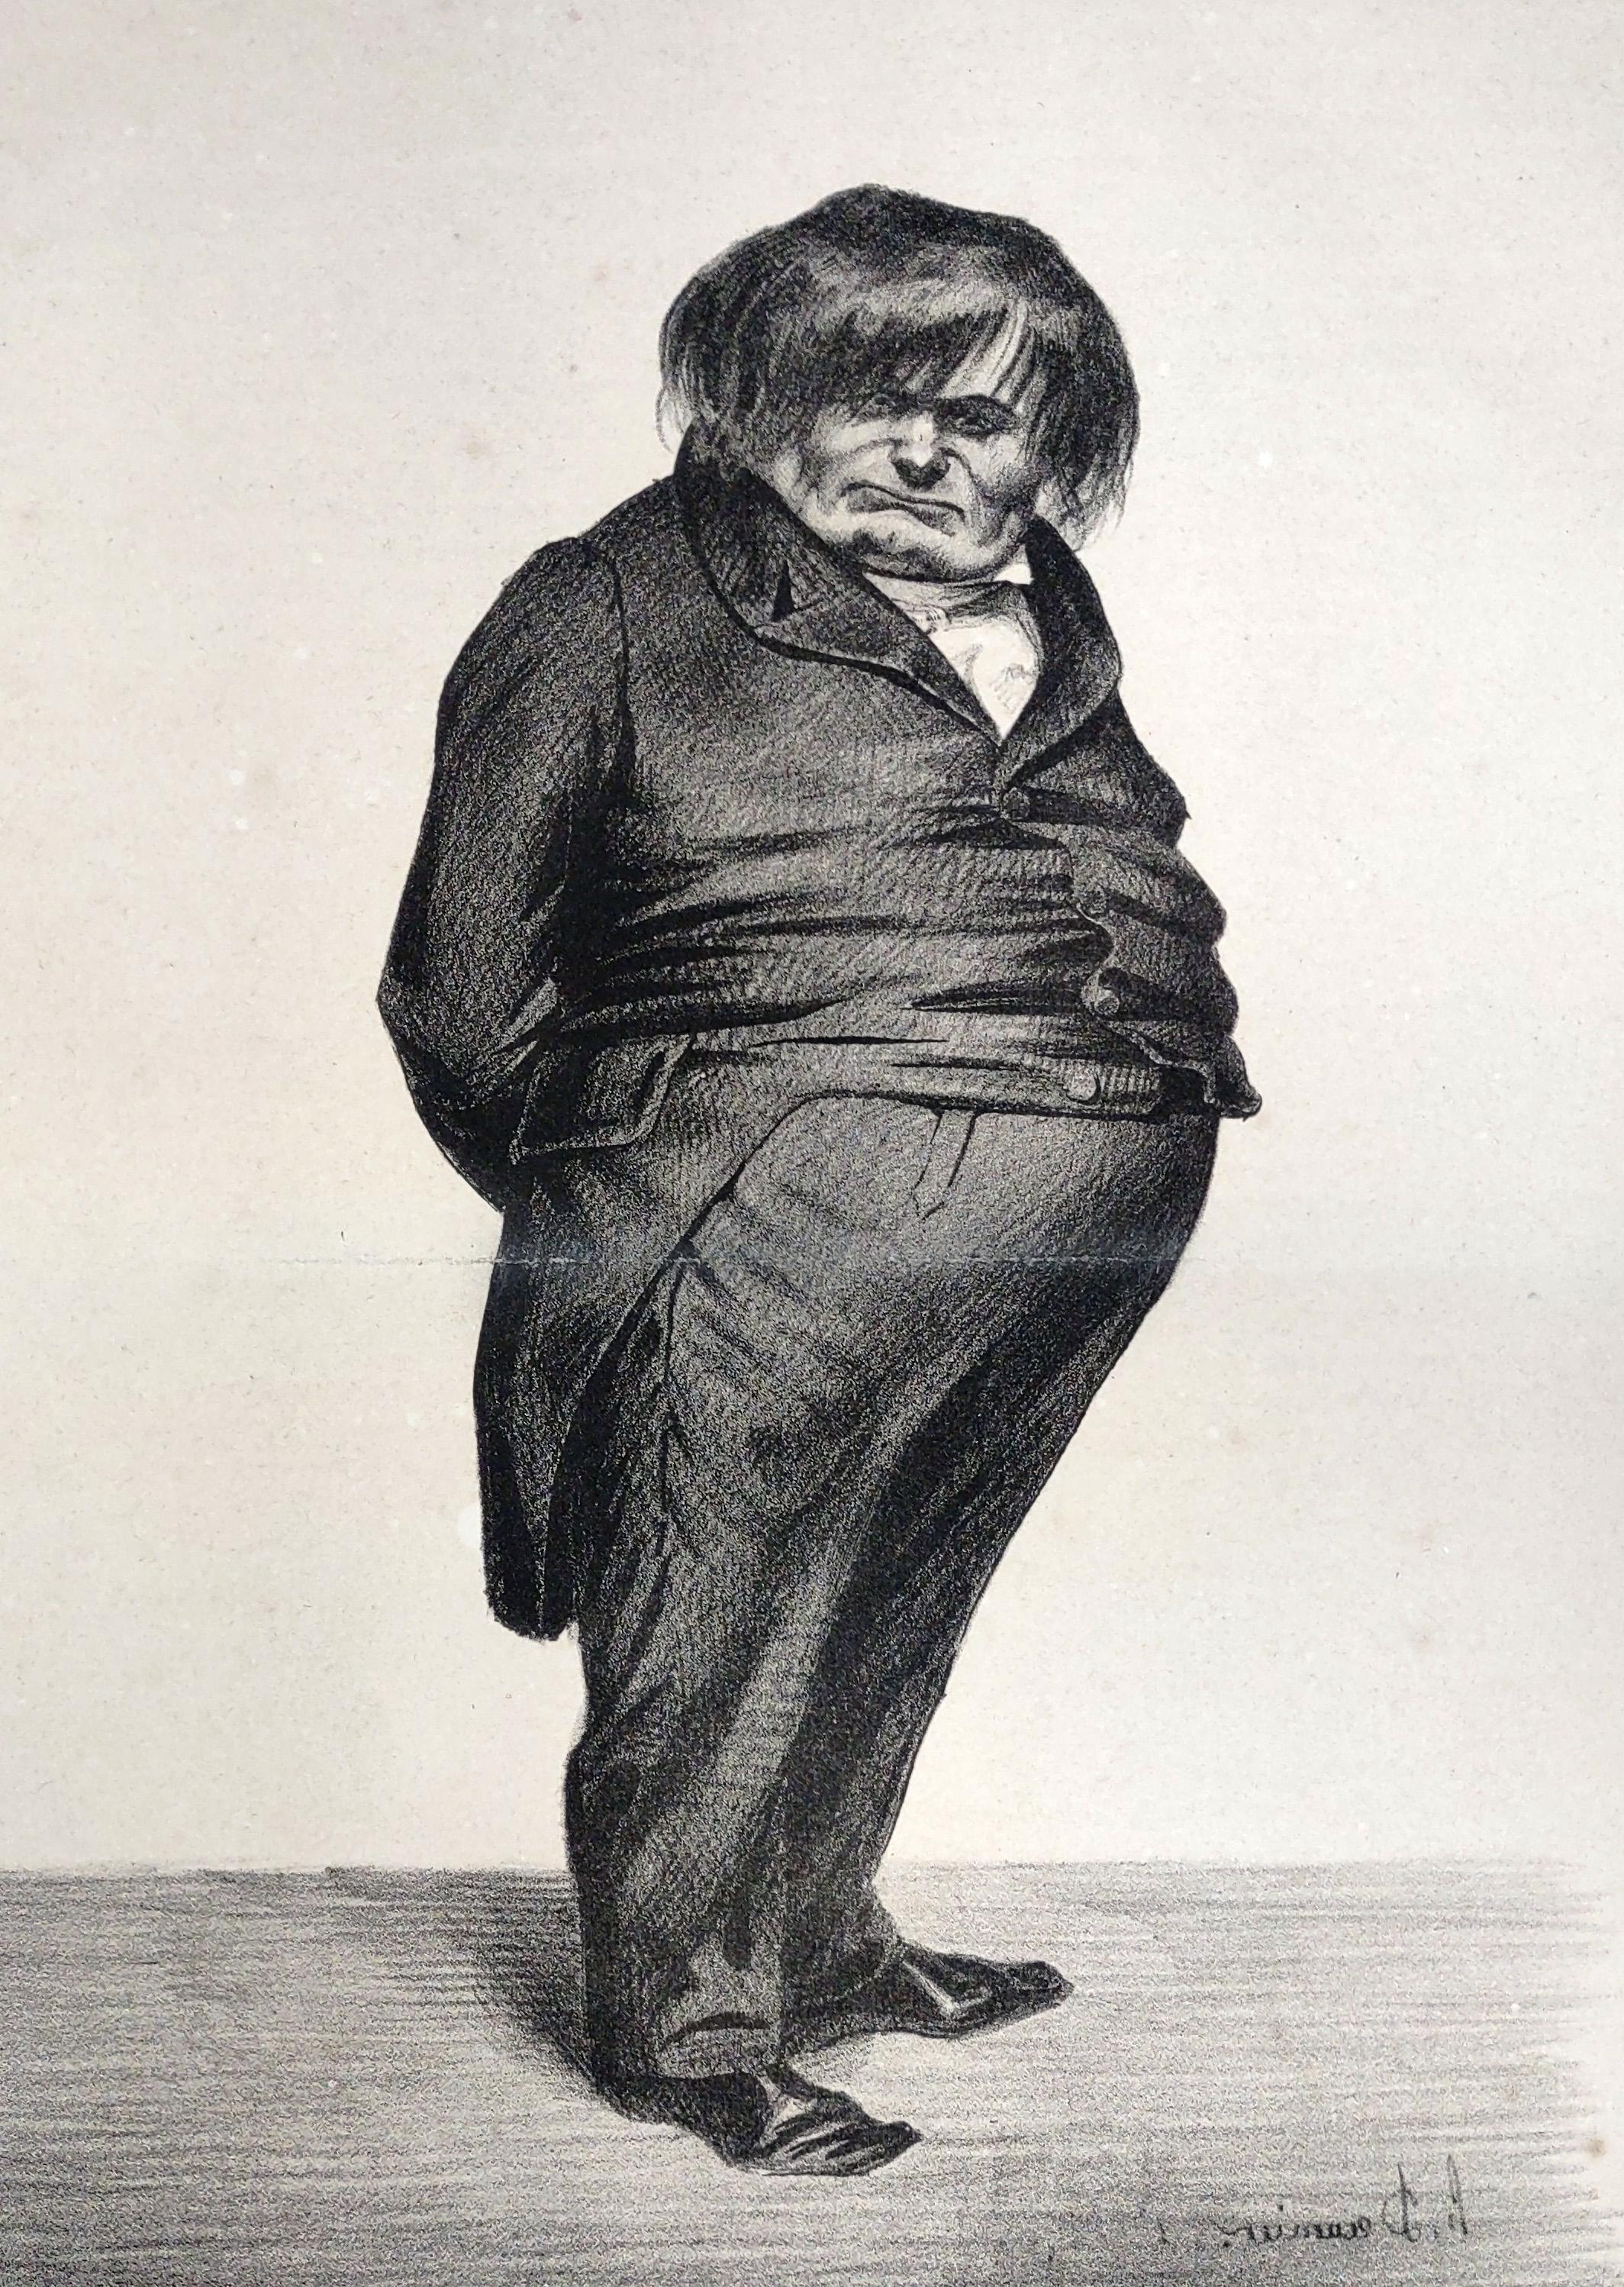 先生的艺术品. 西梅(Clemente Prunelle)由奥诺雷·多米埃(Honore Daumier)创作